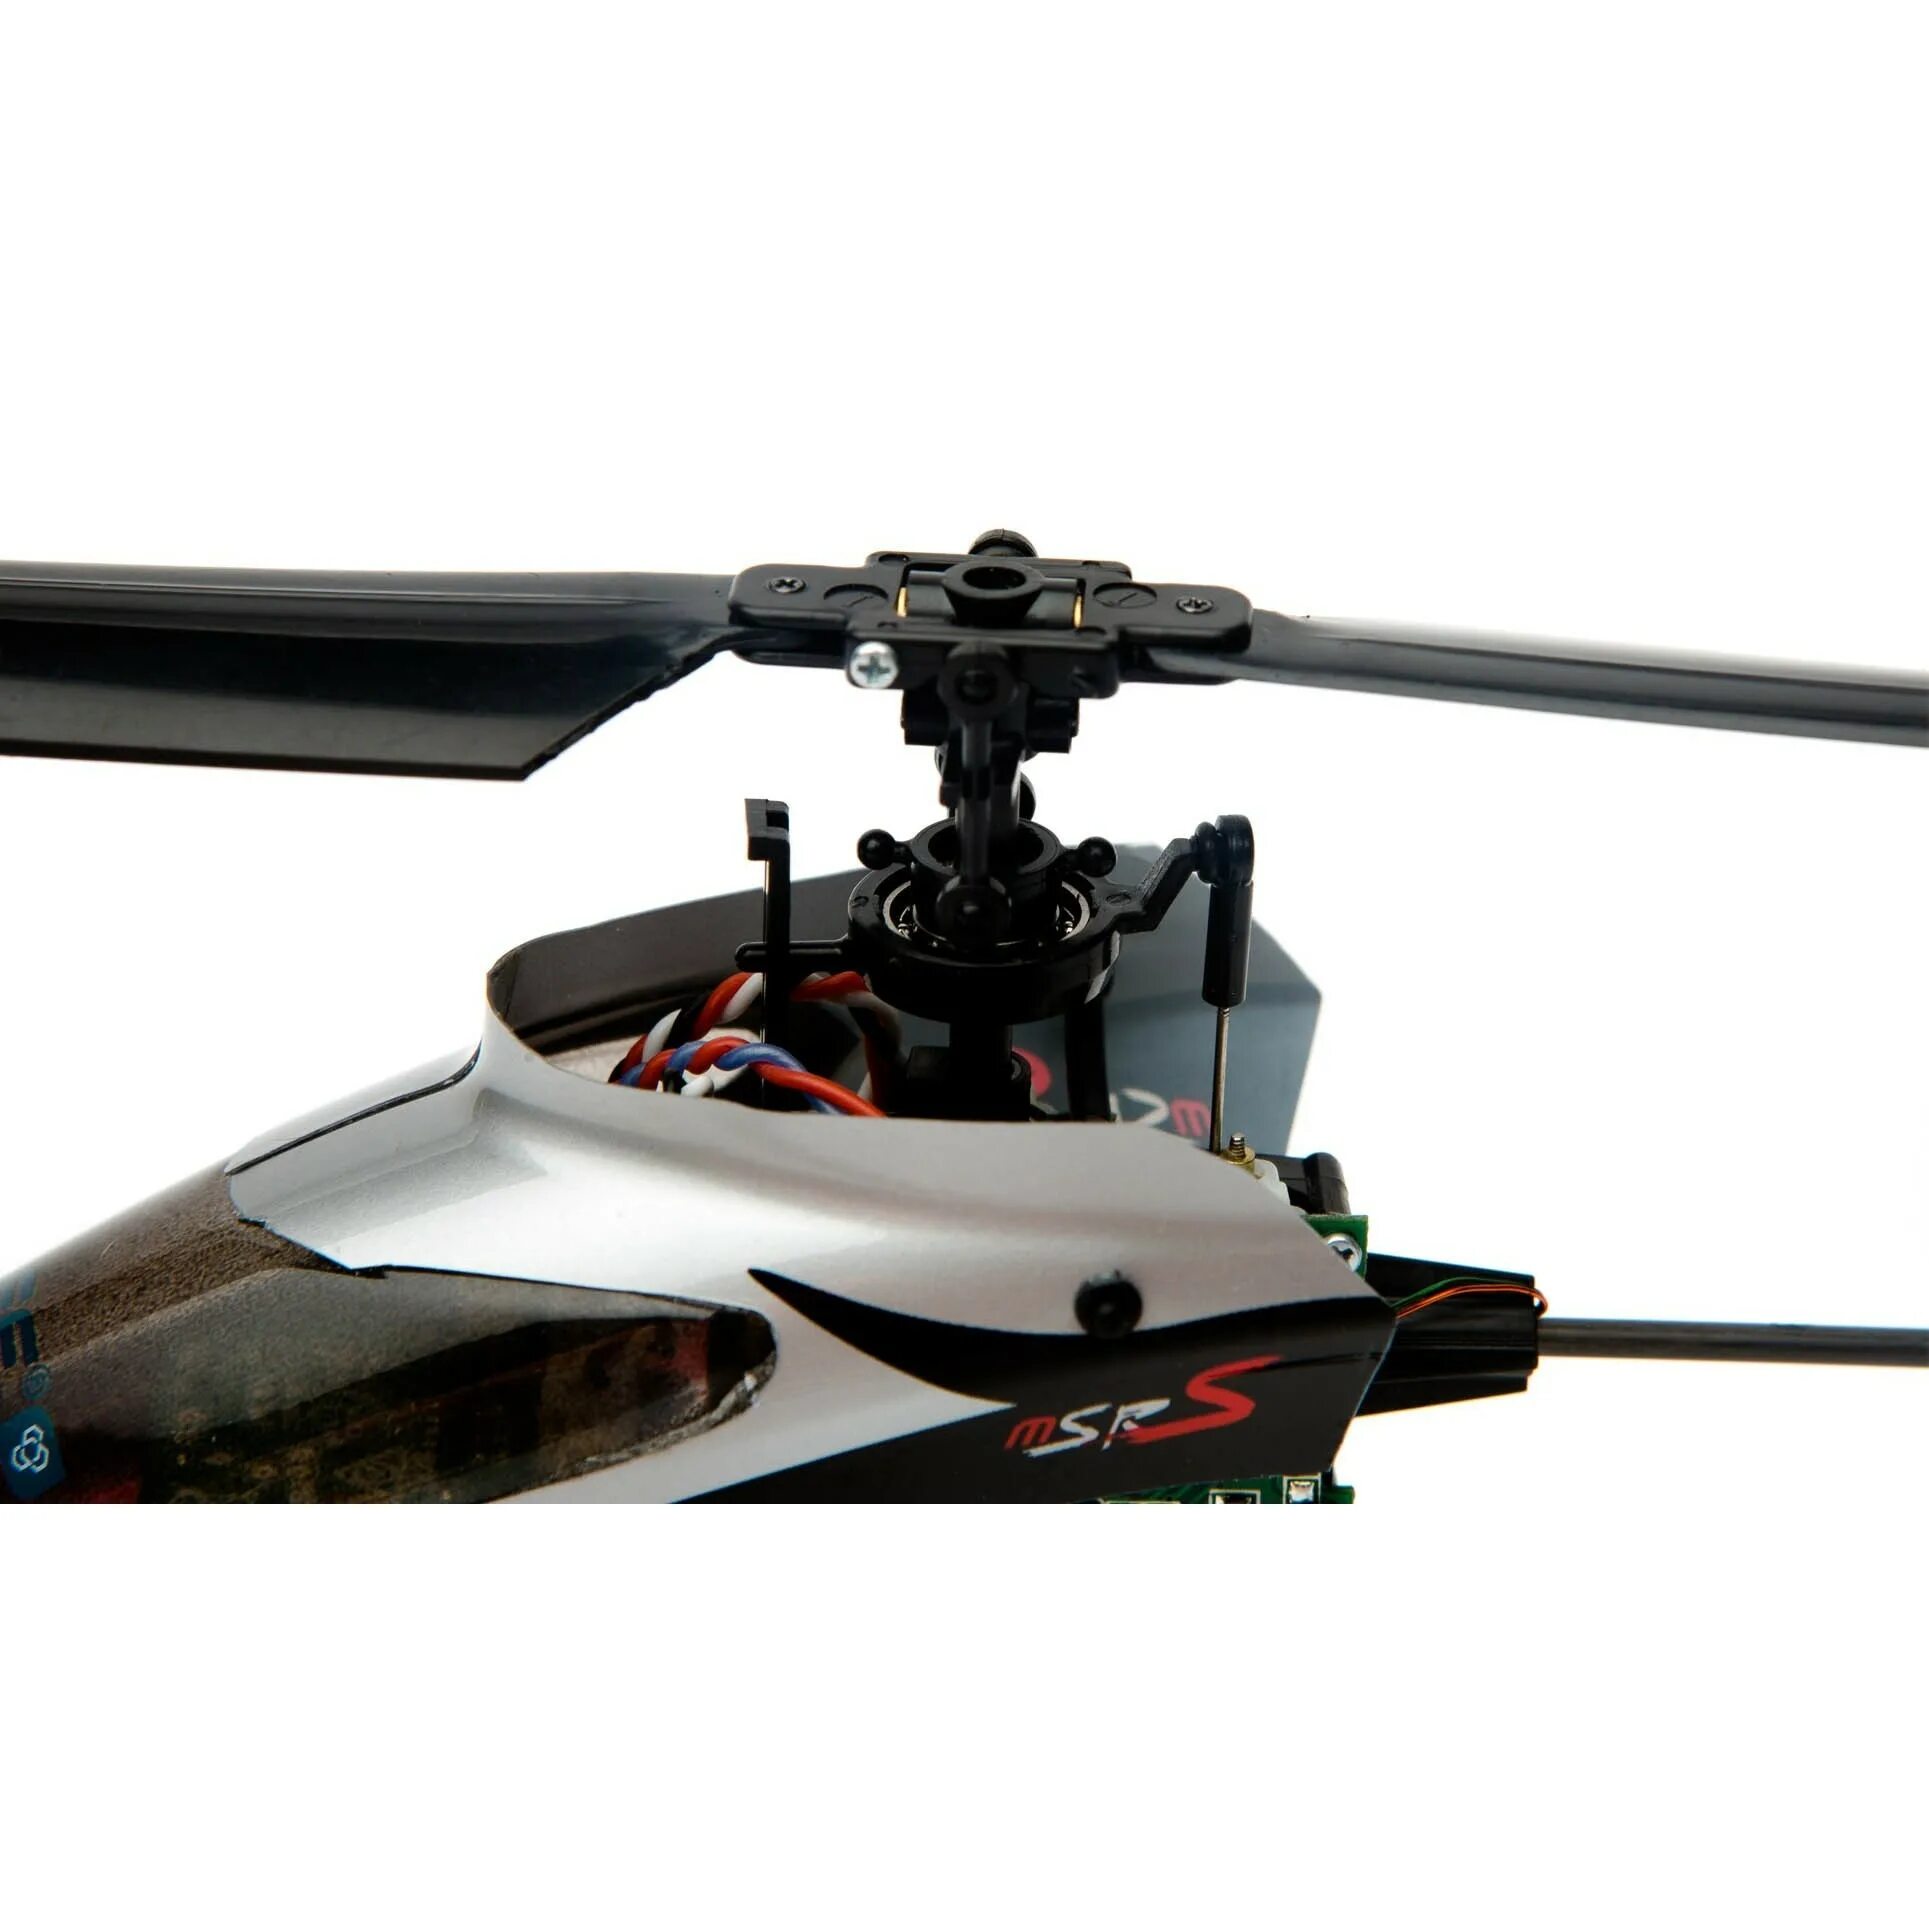 Профессиональное радиоуправление. Blade MSR S. Вертолет радиоуправляемый. Вертолет на радиоуправлении профессиональные. Вертолёт на радиоуправлении большой бензиновый.